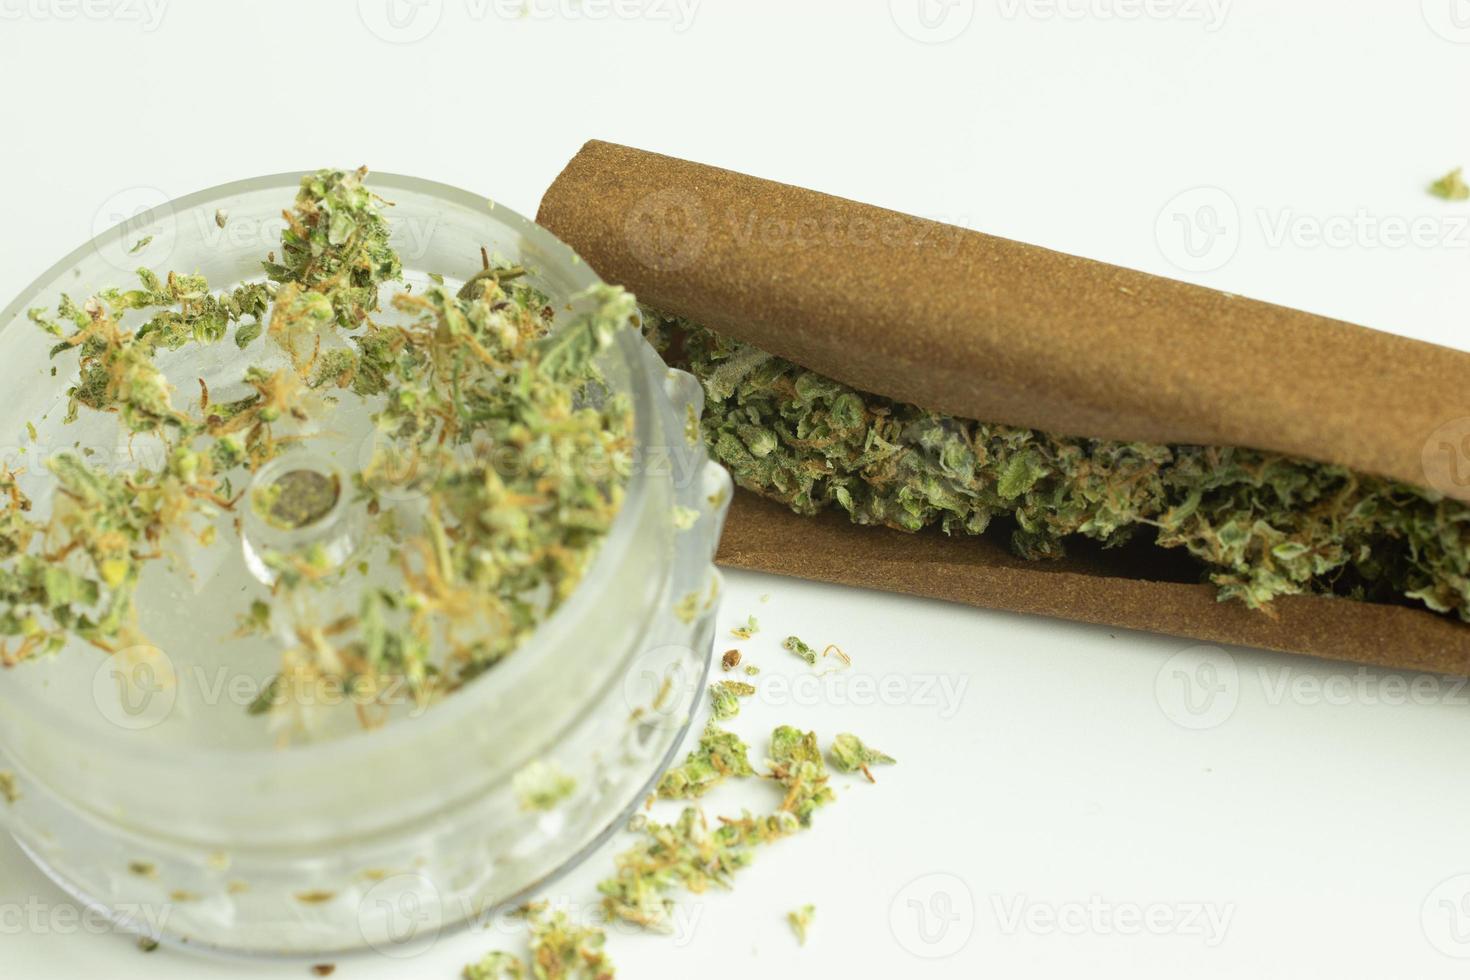 macinino e tabacco carta con canapa per legale ricreativo fumare. THC droga uso nel medicina o assistenza sanitaria foto